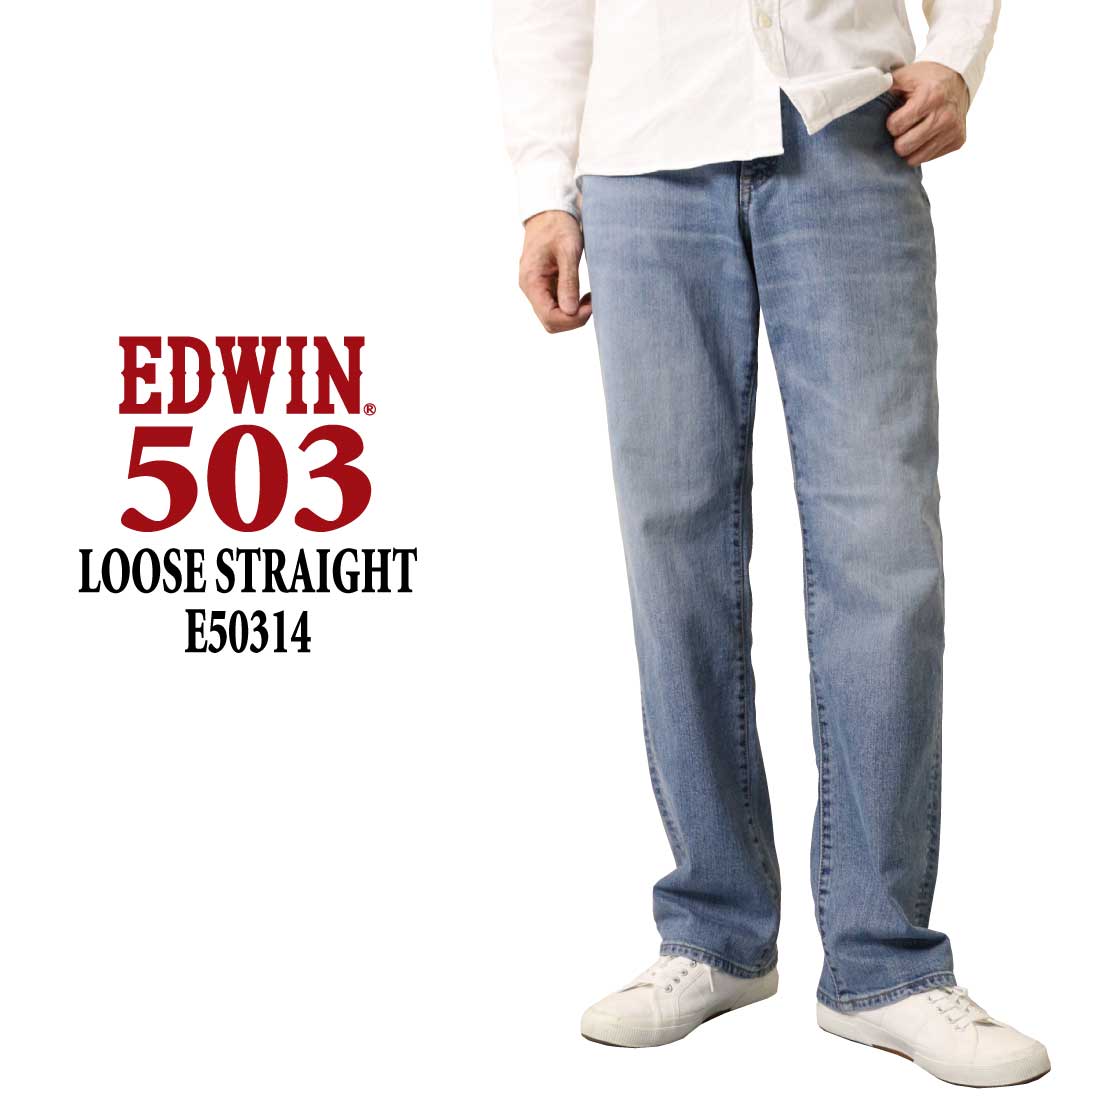 EDWIN ジーンズ 503 ルーズストレートパンツ LOOSE STRAIGHT E50314 ス...